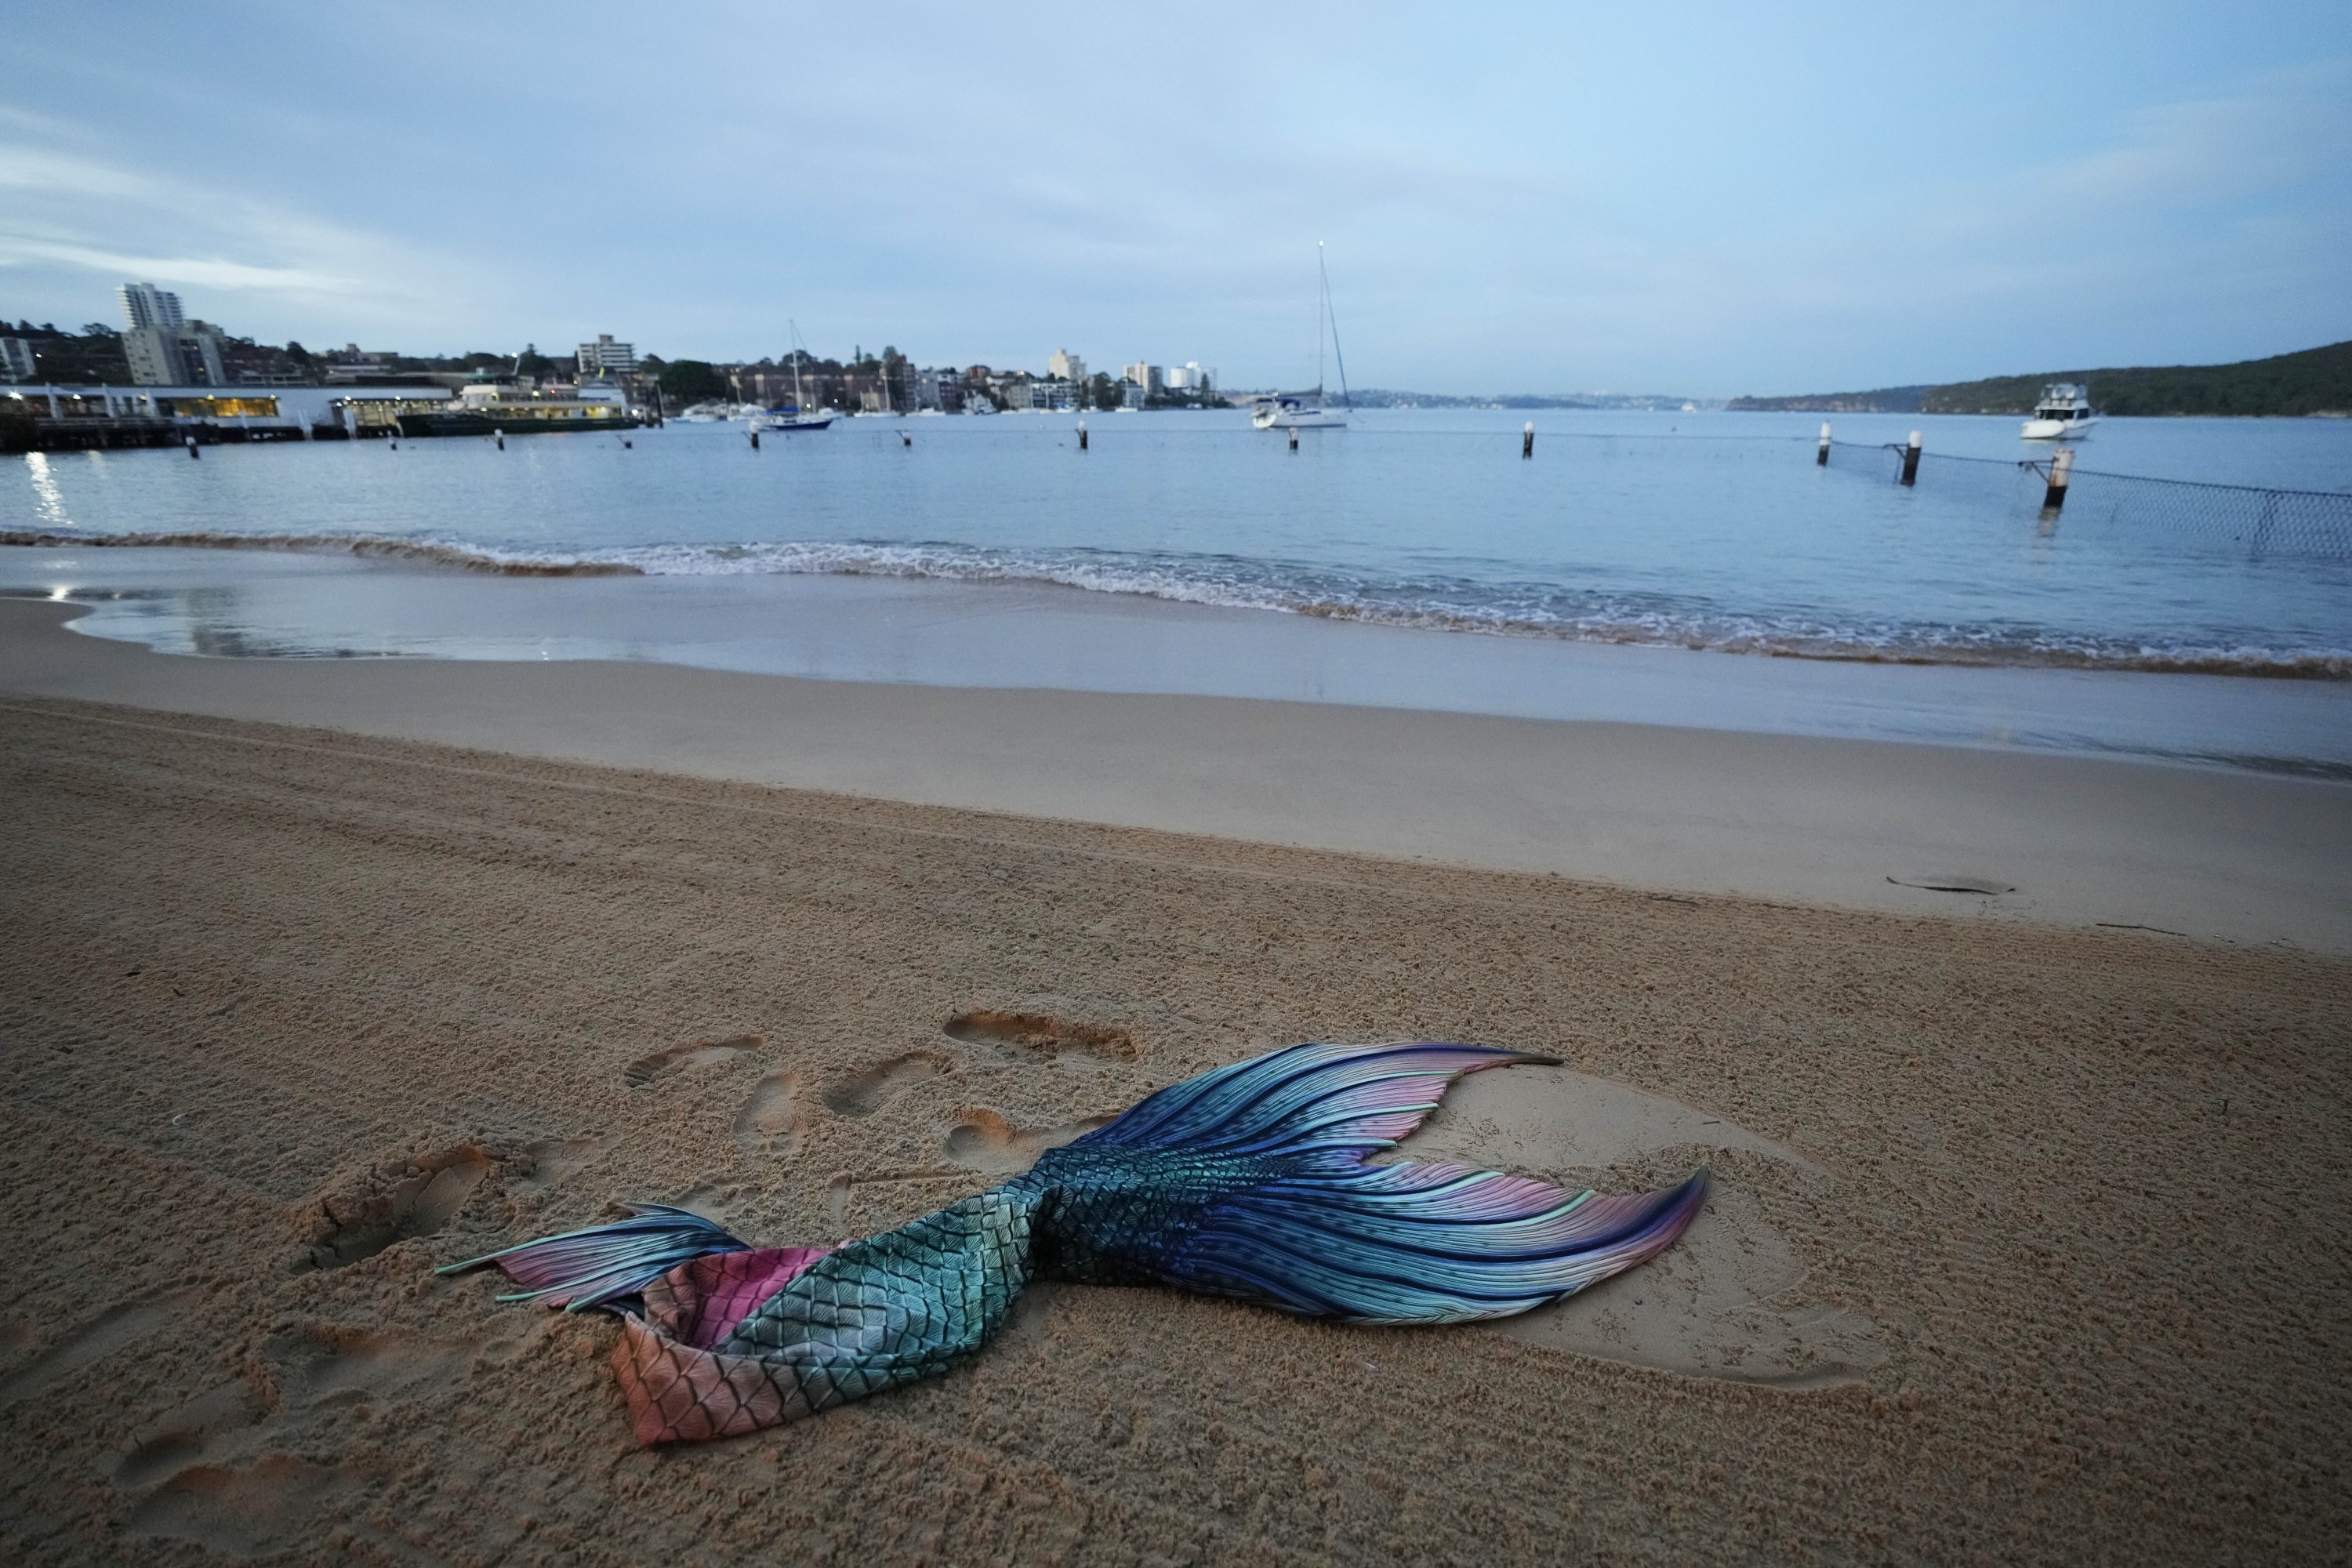 Ekor Lauren Metzler, pendiri Sydney Mermaids, tergeletak di pasir saat bersiap untuk berenang pagi hari di Manly Cove Beach di Sydney, Australia, Kamis, 26 Mei 2022. (AP Photo)